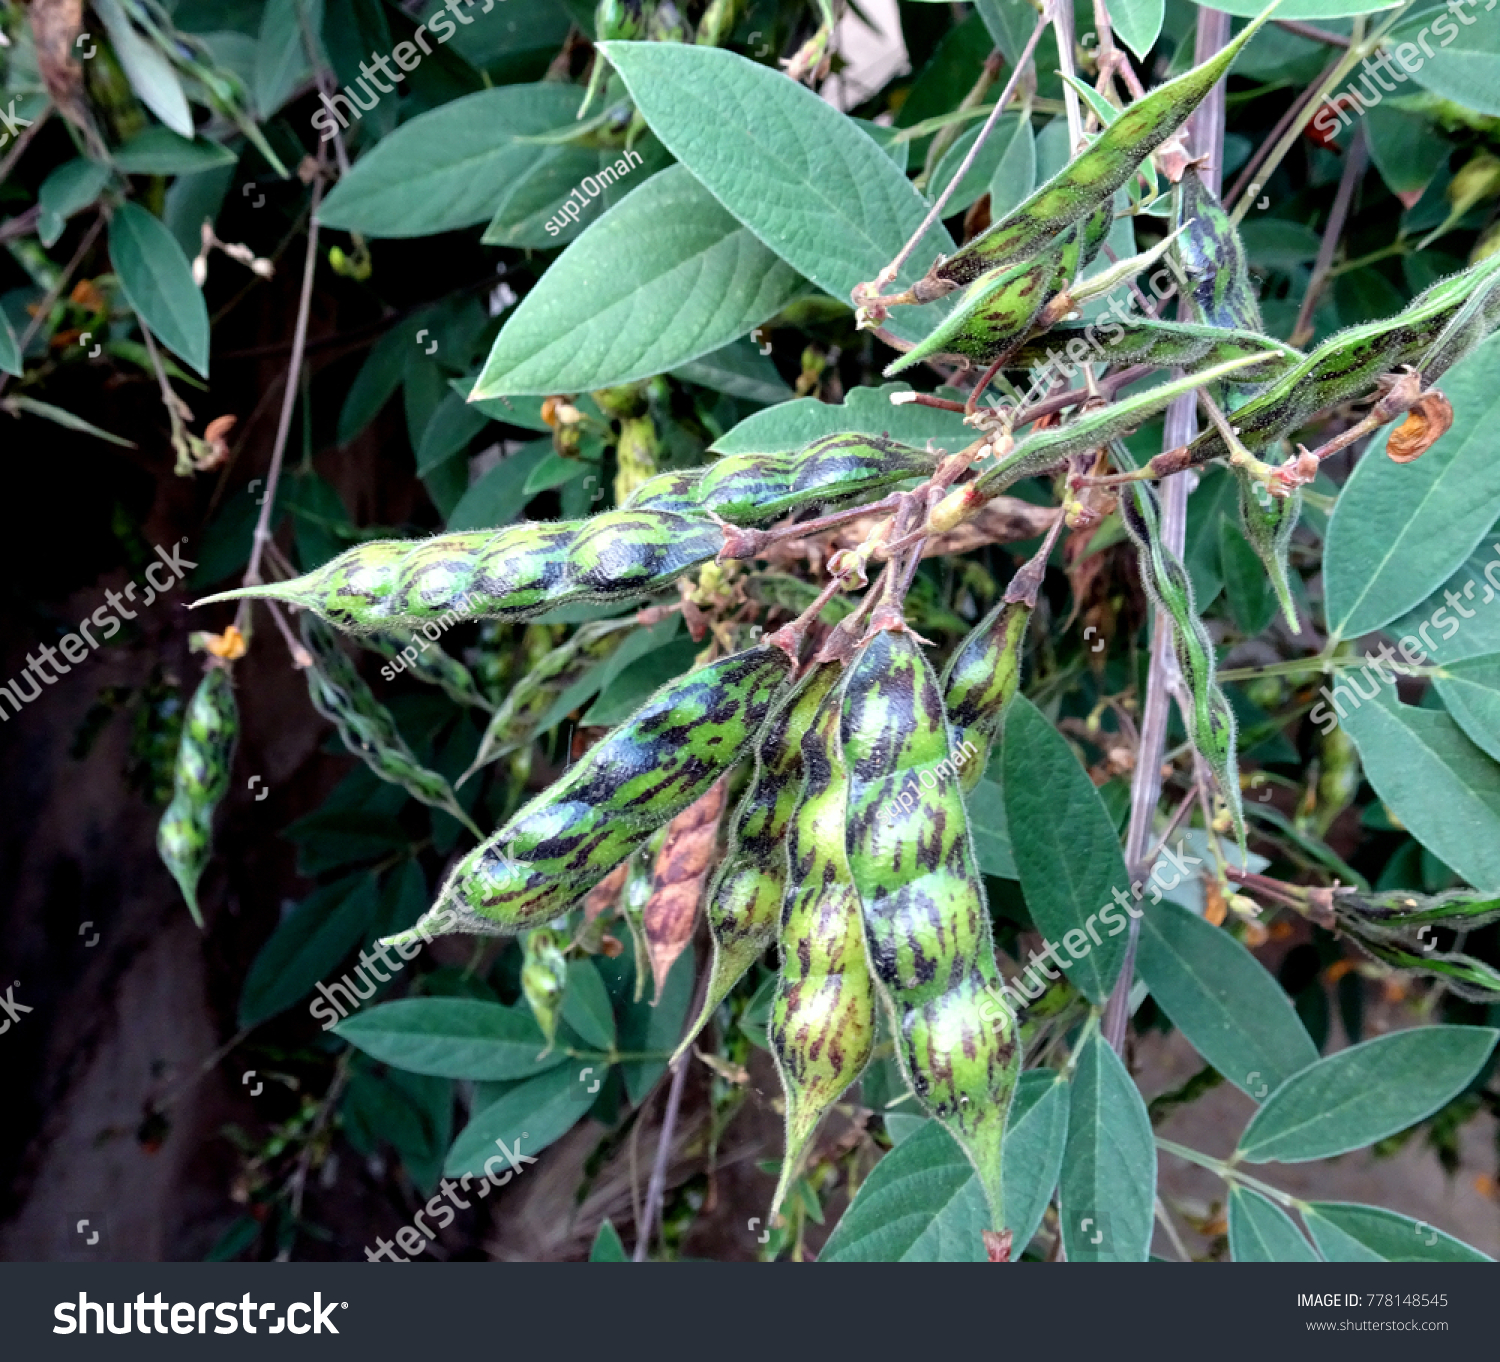 Pigeon peas arhar toor daal growing on a tree branch close up  #778148545